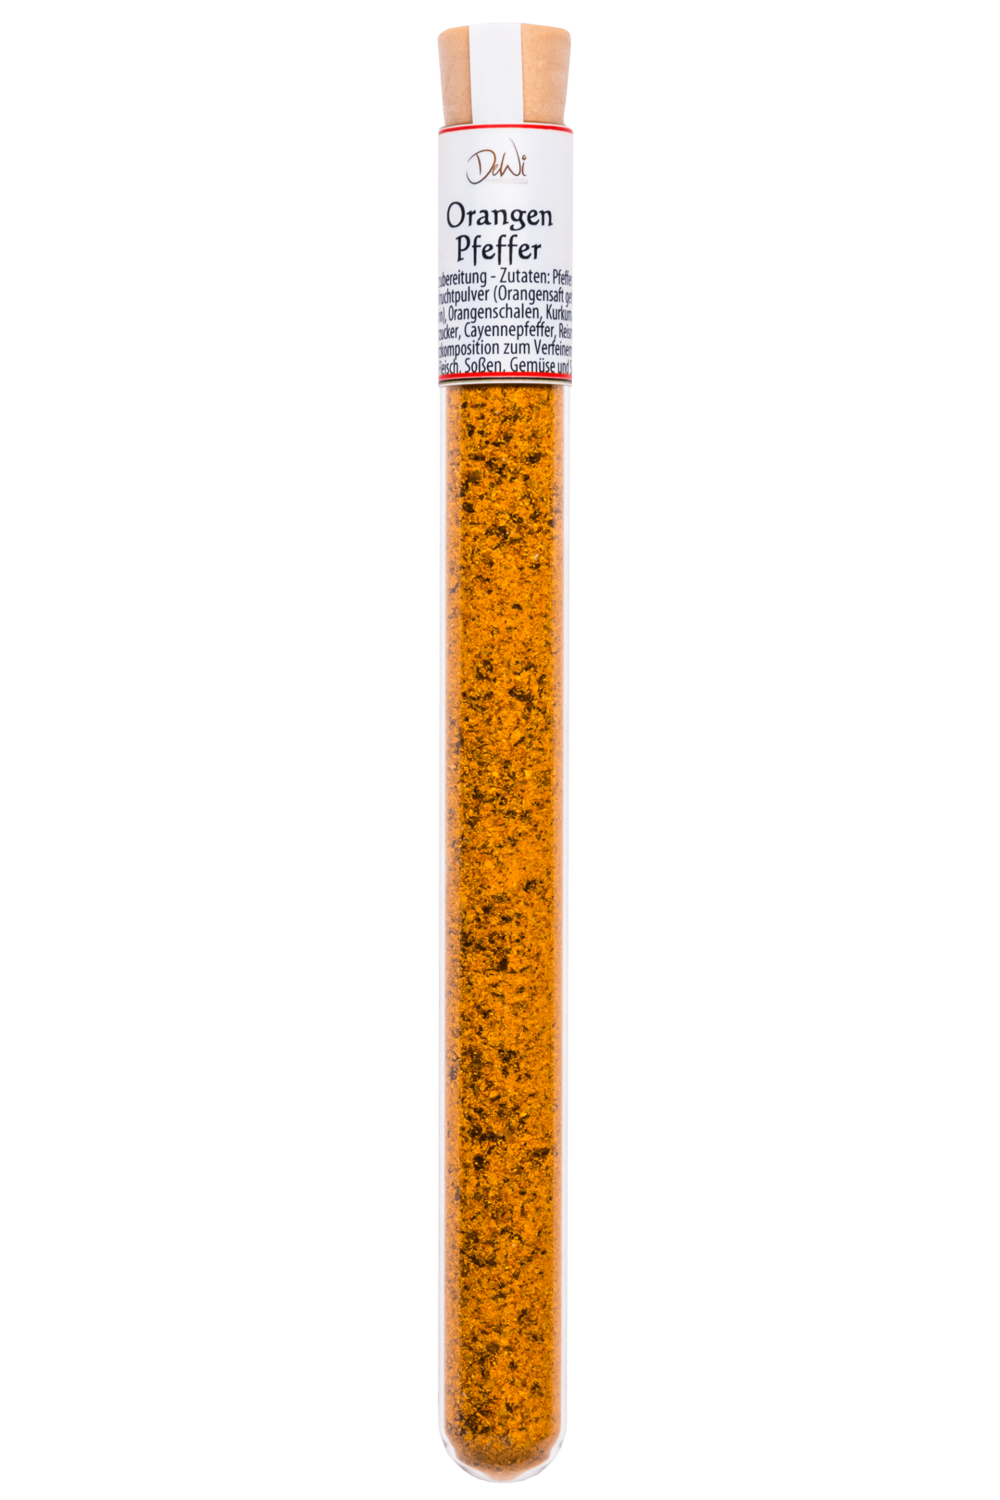 Orangenpfeffer im Reagenzglas - Inhalt 11 g (268,20 €/kg)